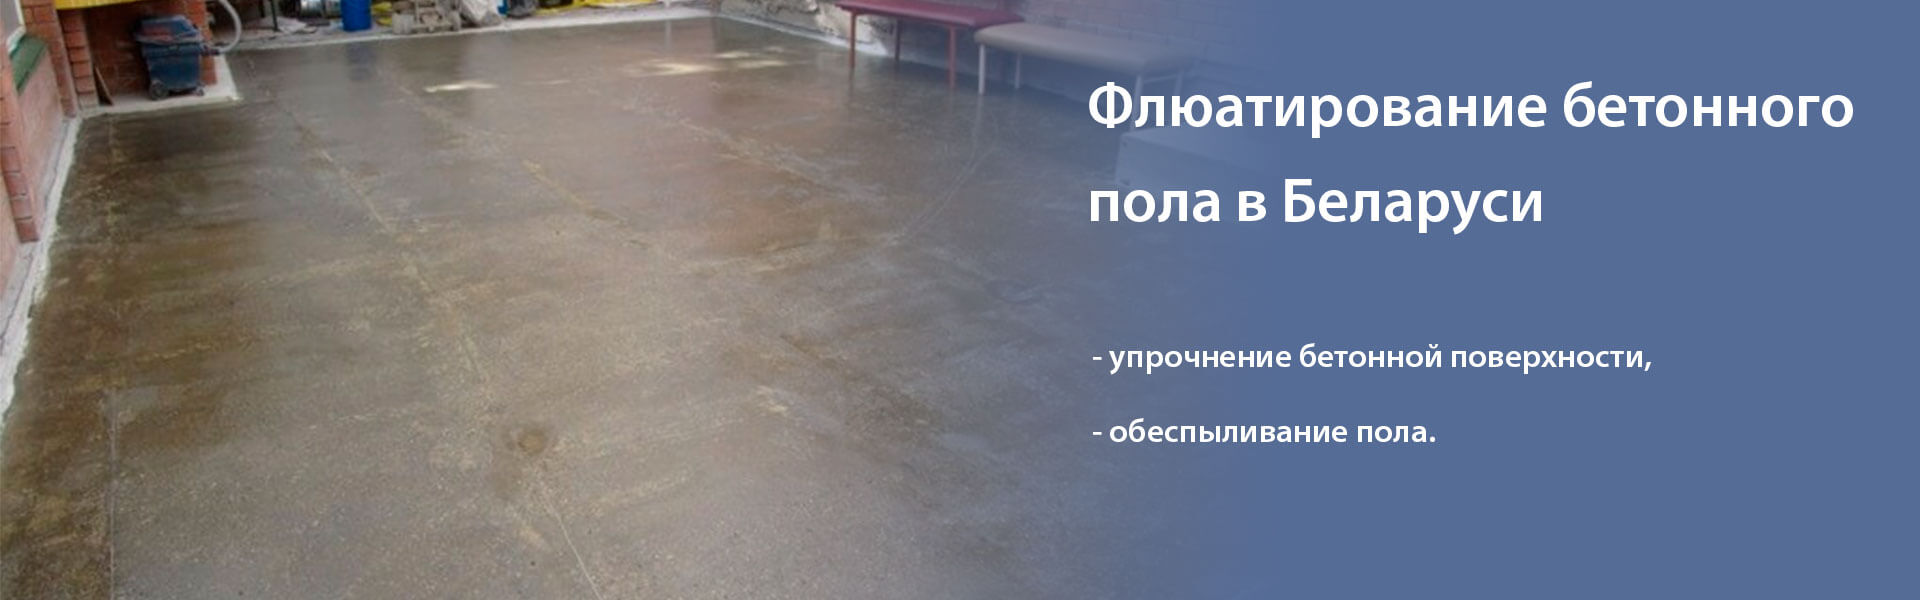 Флюатирование бетонного пола: суть технологии и где заказать в Минске и Беларуси